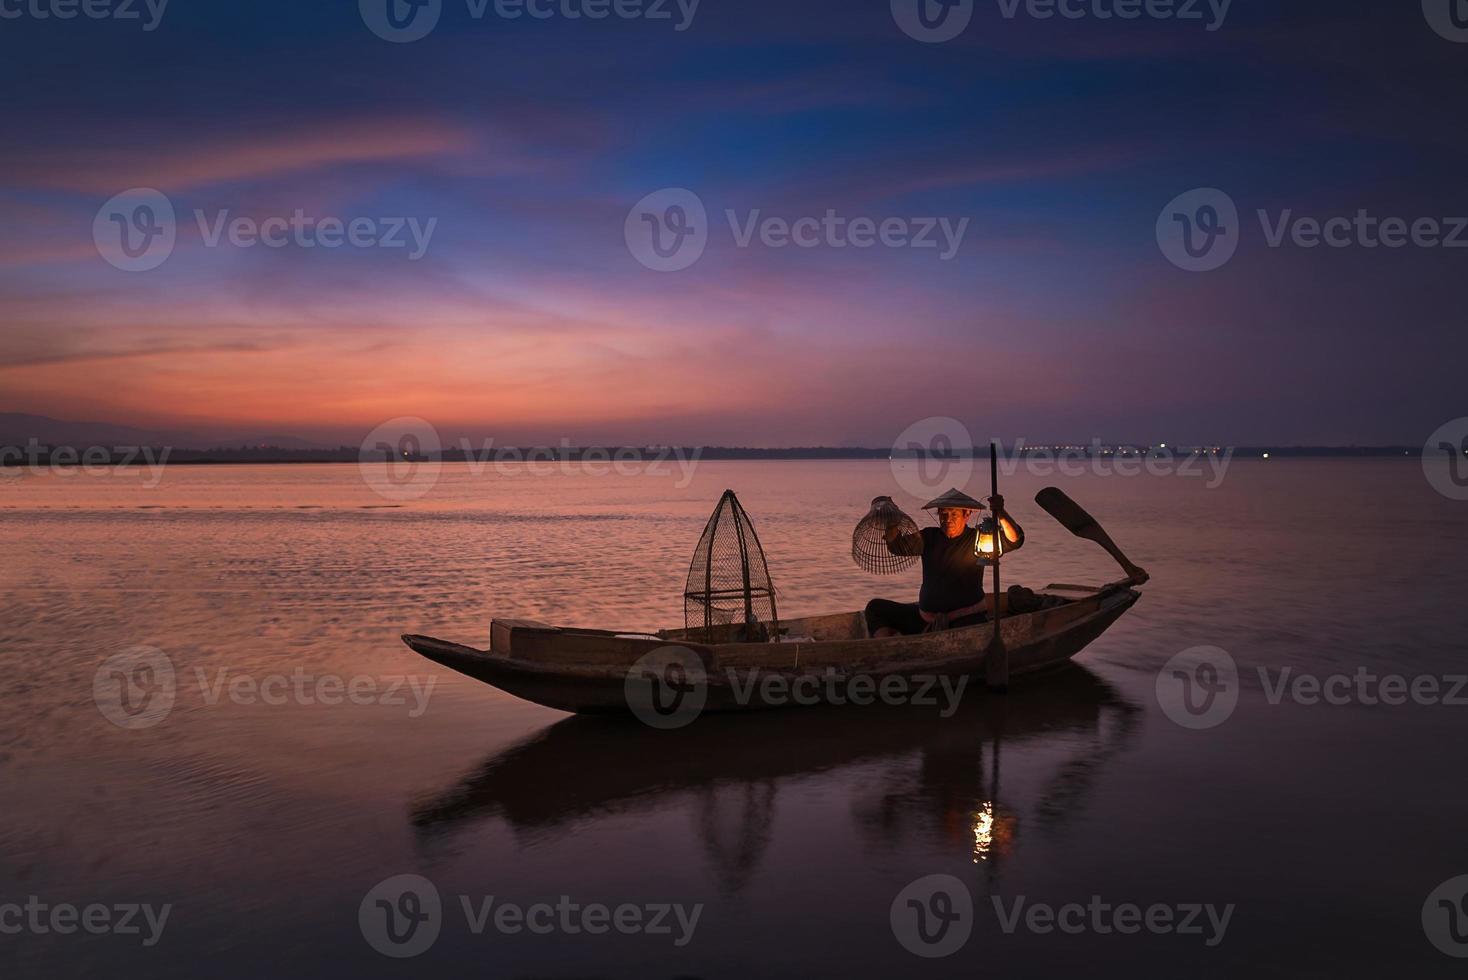 pêcheur asiatique avec son bateau en bois dans la rivière nature tôt le matin avant le lever du soleil photo